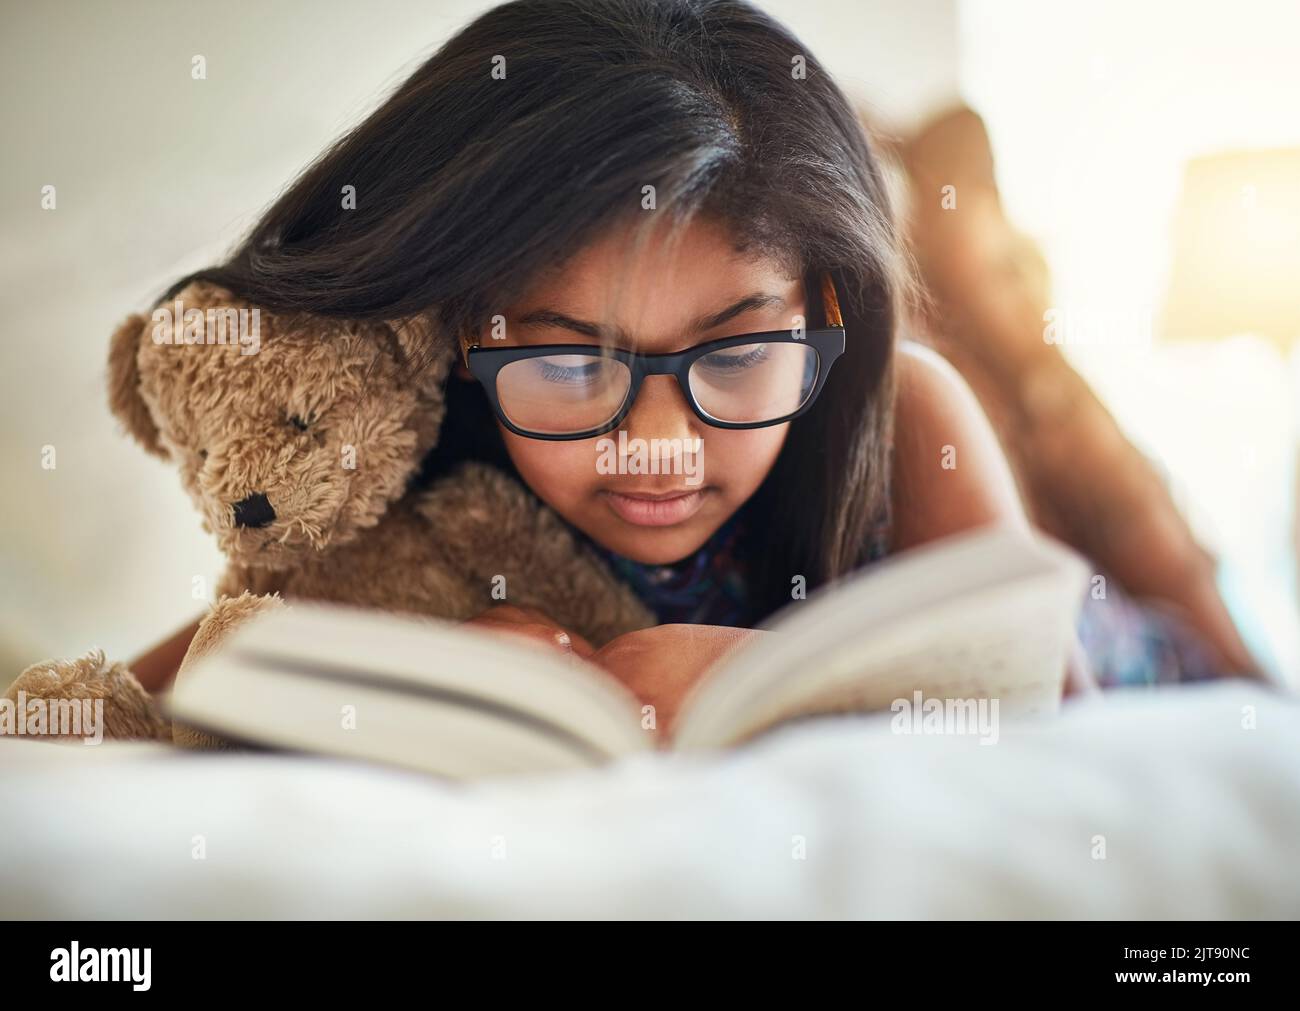 Un amante dei libri. Una ragazza carina che legge un libro nella sua camera da letto. Foto Stock